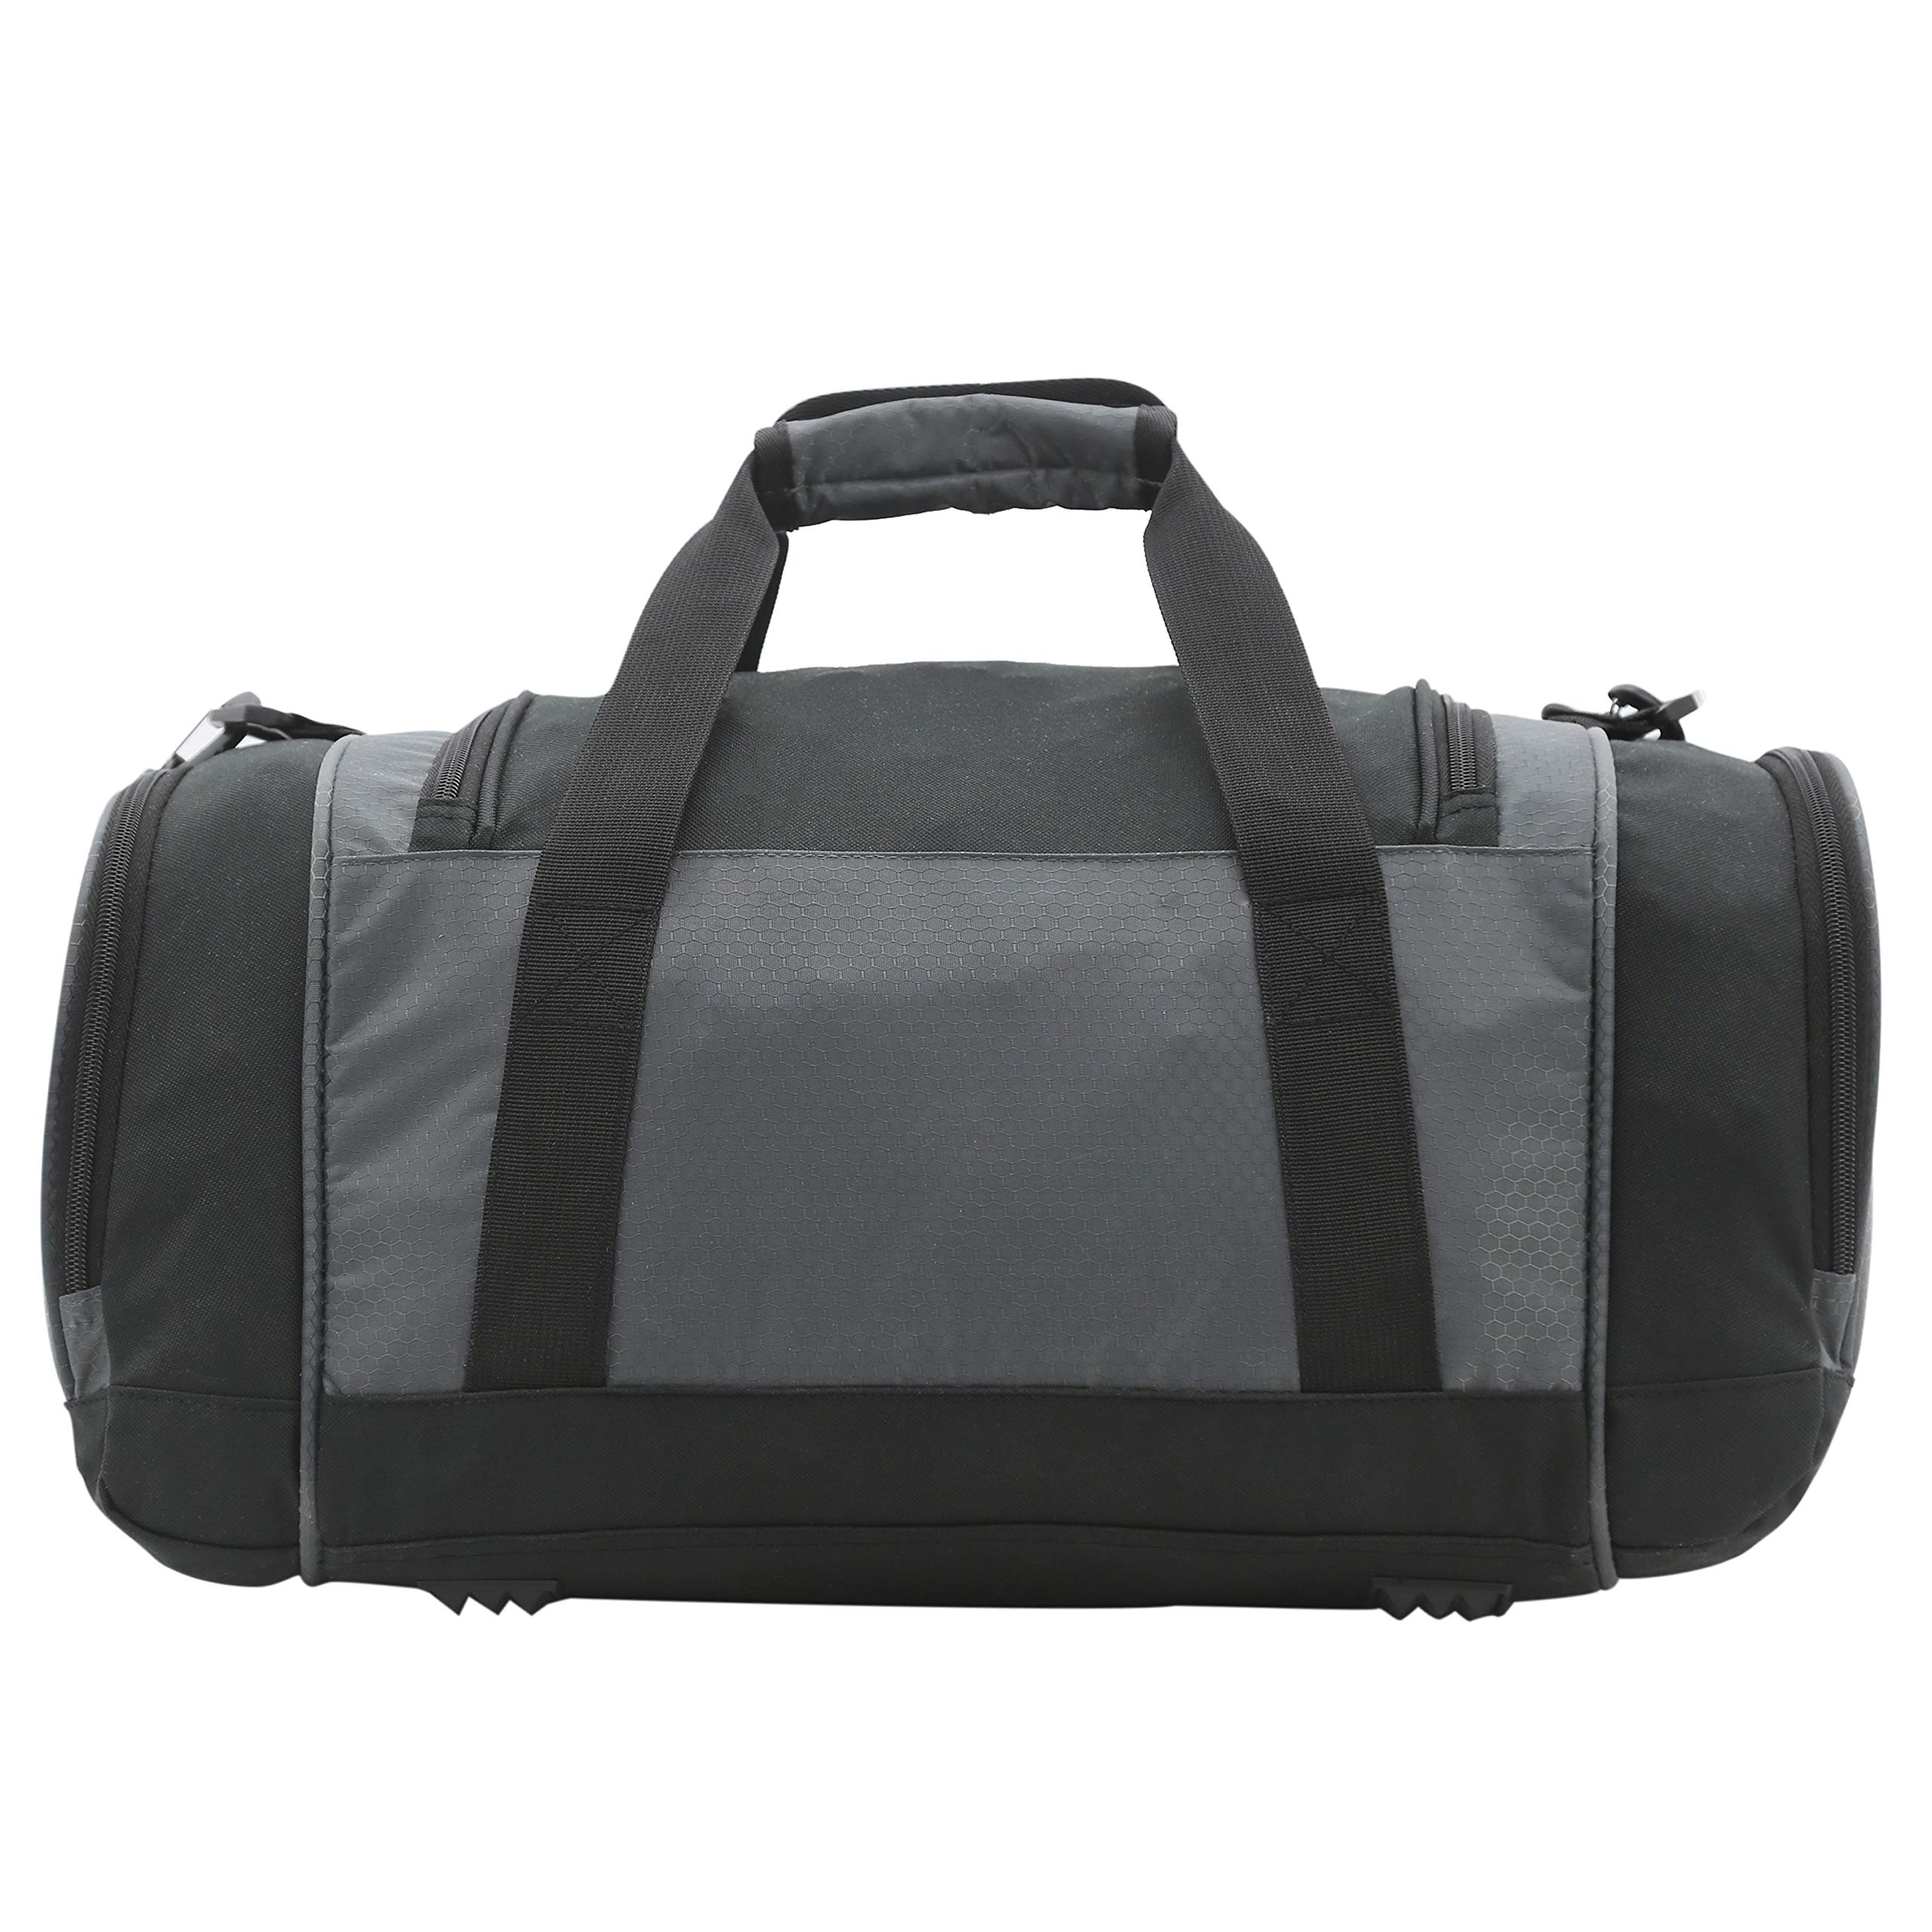 TPRC Adventure Weekender Nylon Duffel Bag, Grey, 20 Inch 34.4L